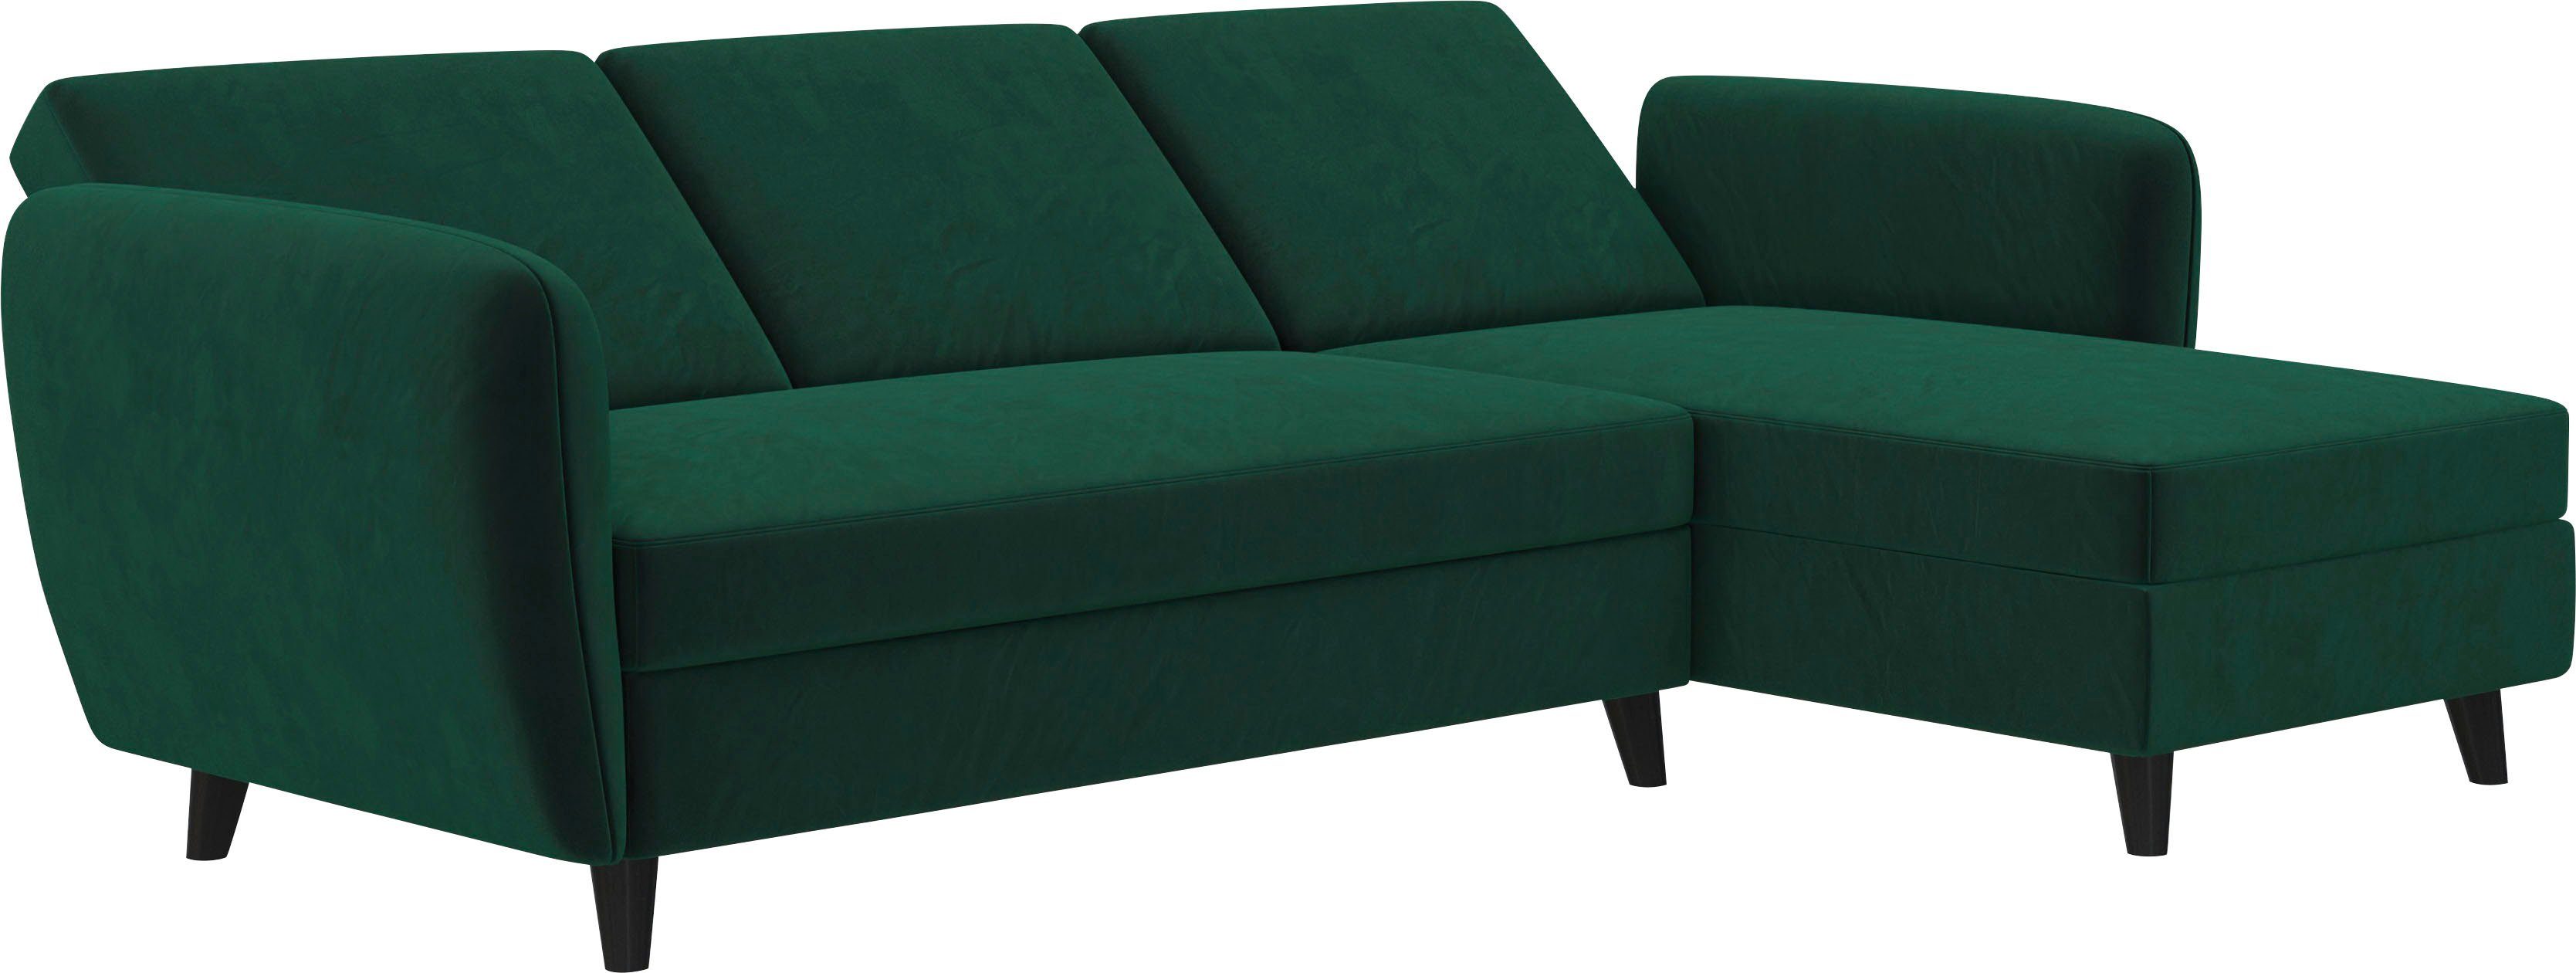 Breite Sitzhöhe Rückenlehne, Farbvarianten, verschiedene dunkelgrün cm, Dorel 43 219 Home cm Perry, Ecksofa